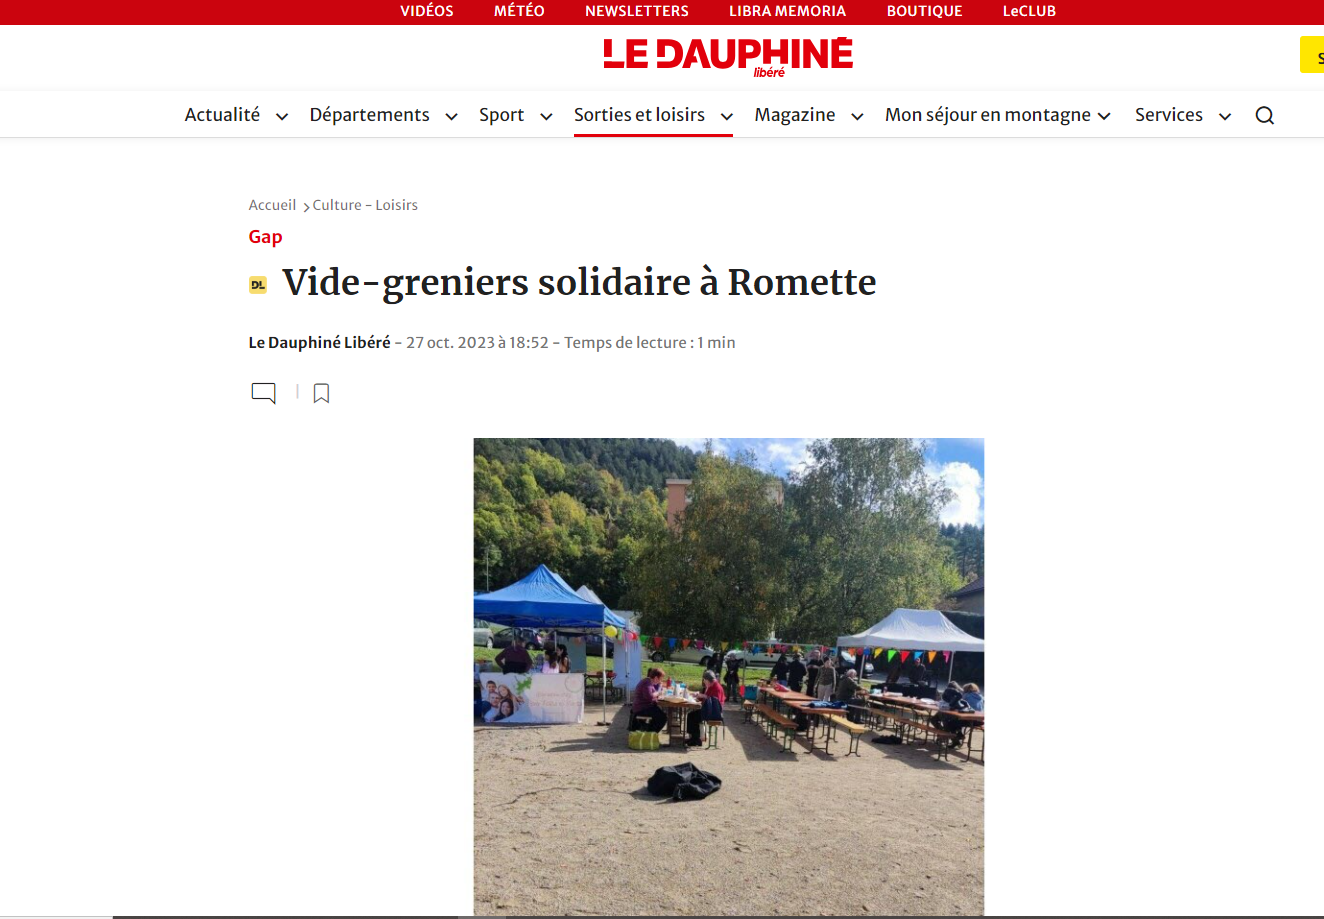 Vide Grenier Solidaire à Romette.